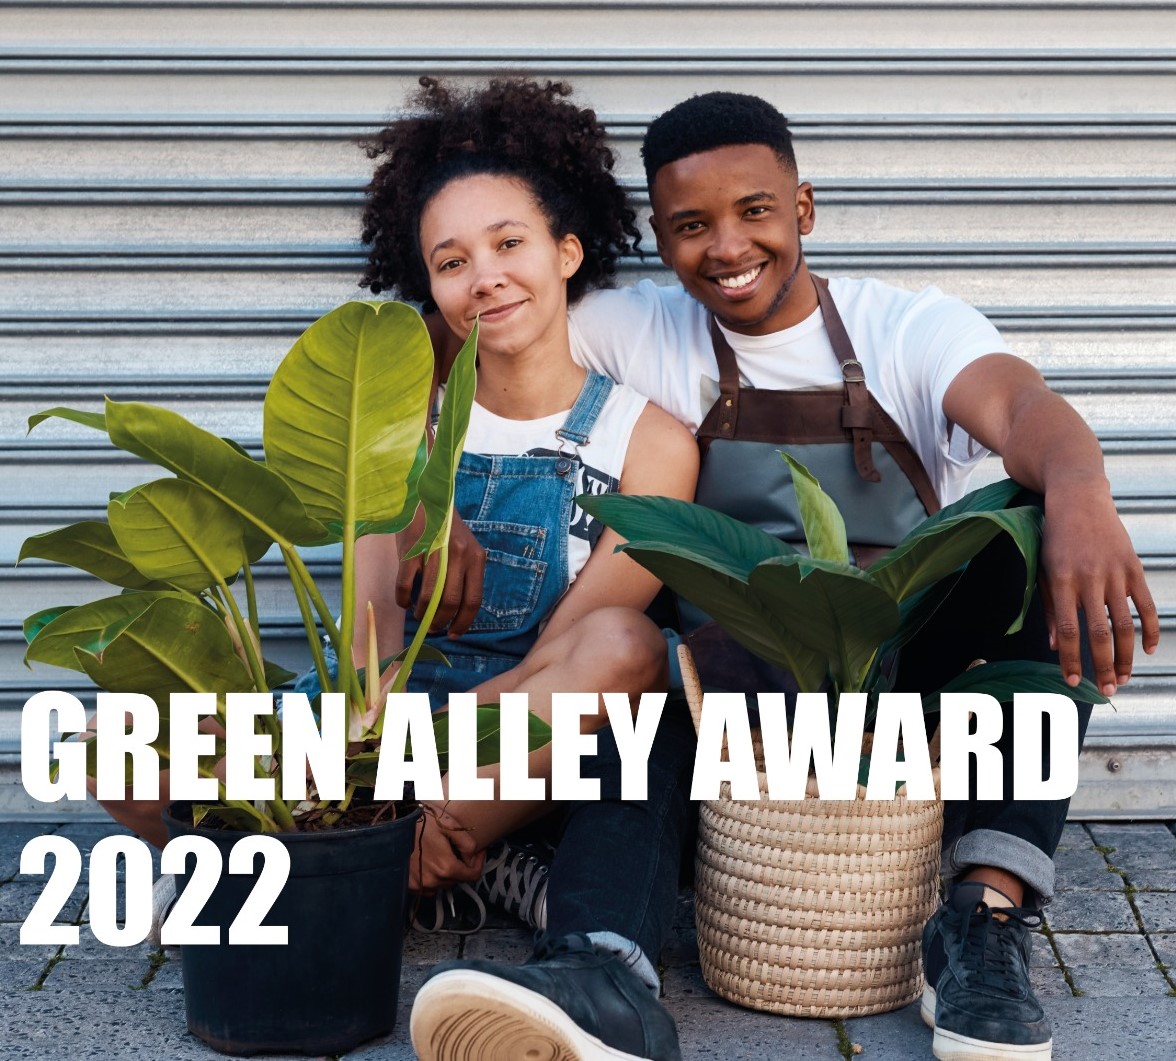 green-alley-award-2022.jpg